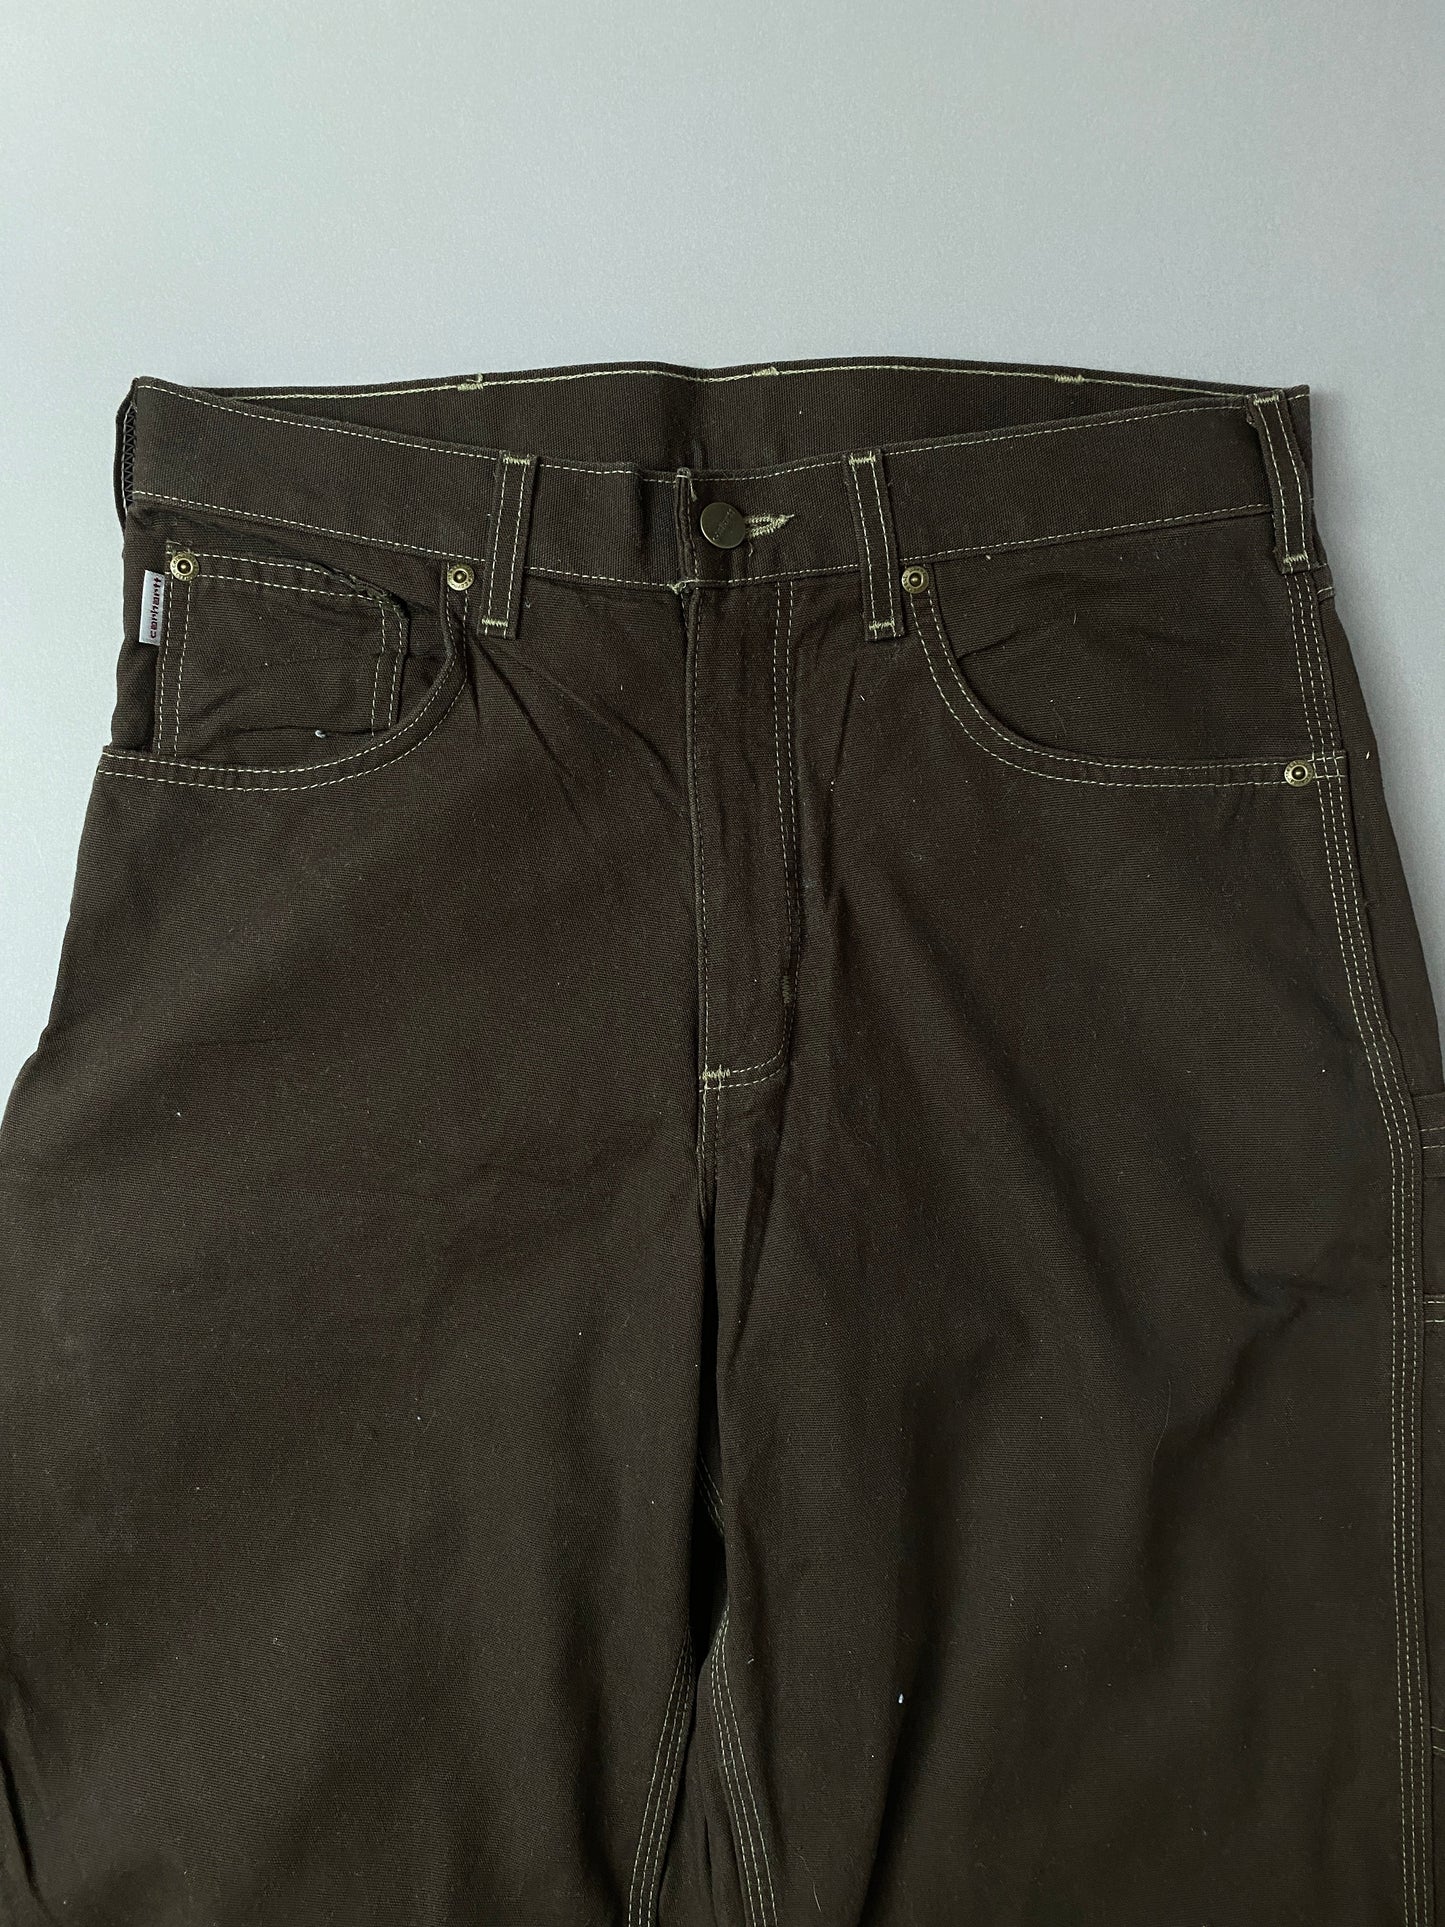 Pantalones Carhartt Carpenter - 30 x 30